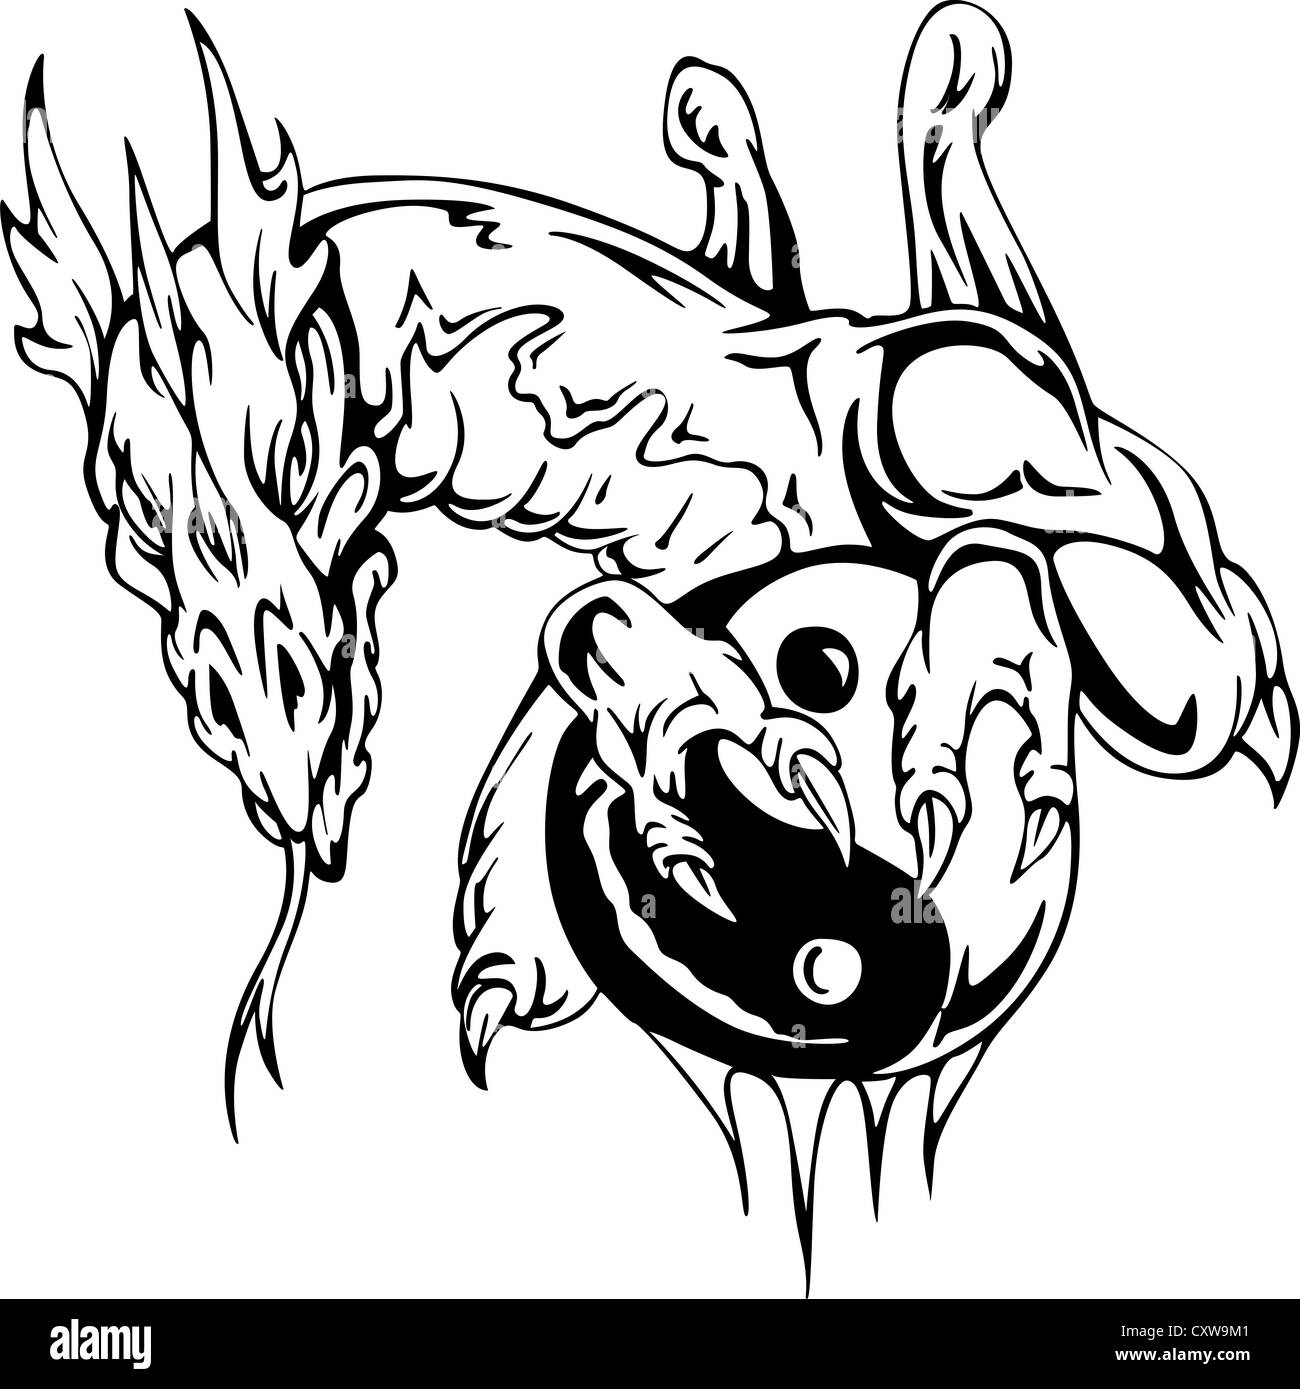 Tatouage de Dragon avec signe yin-yang. Illustration vecteur EPS. Banque D'Images